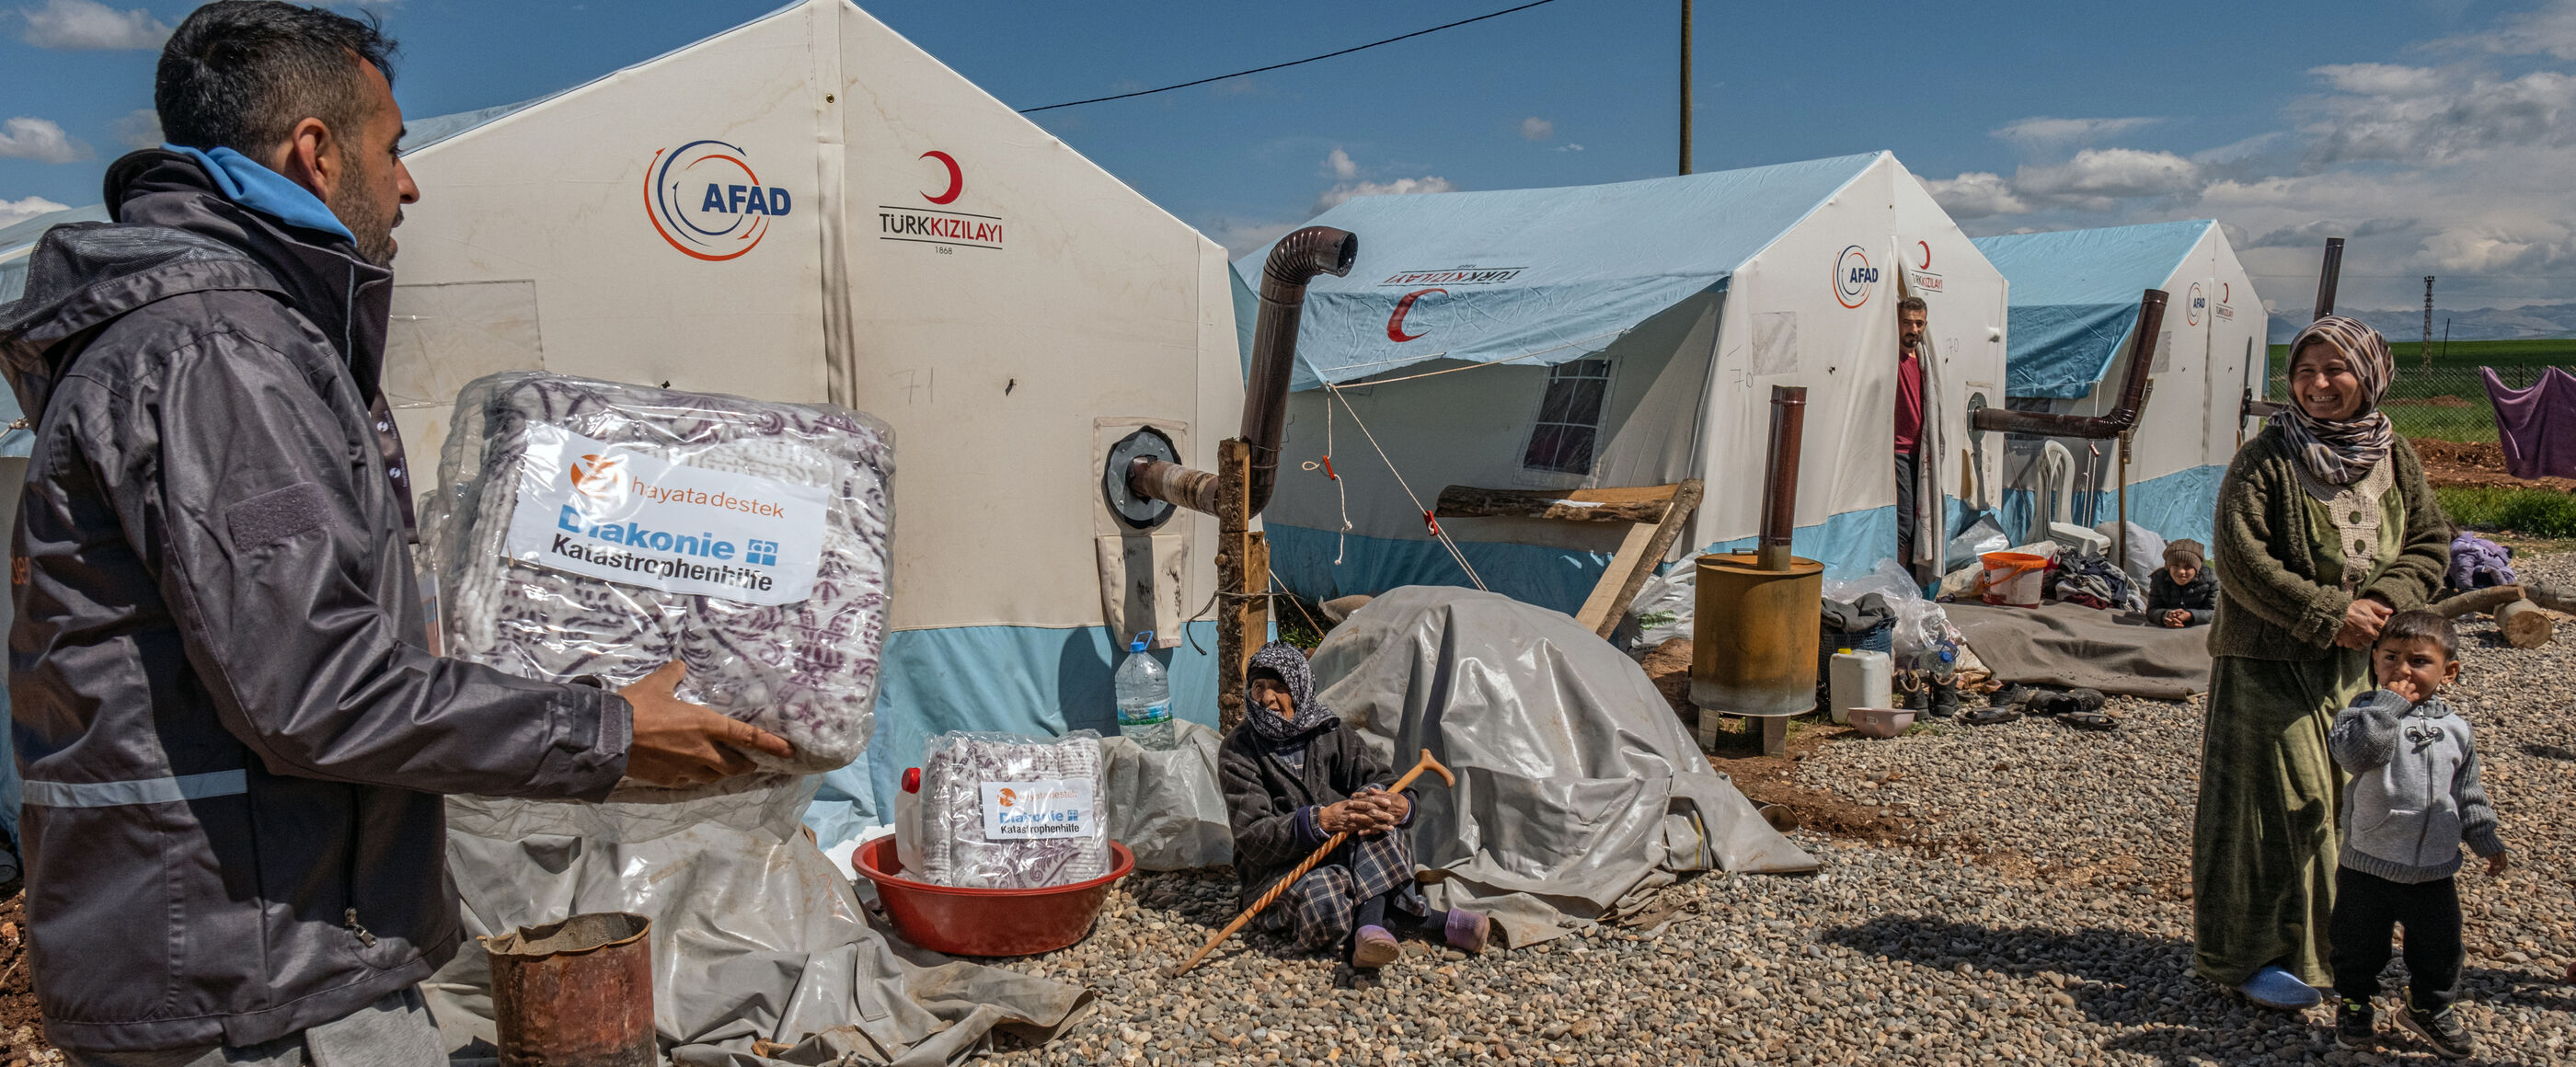 Eine männlich gelesene Person trägt ein Paket, auf dem "Diakonie Katastrophenhilfe" steht, zu einer weiblich gelesenen Person mit Kind. Das Umfeld wirkt wie in einem Flüchtlingslager: Zelte, Kiesboden.